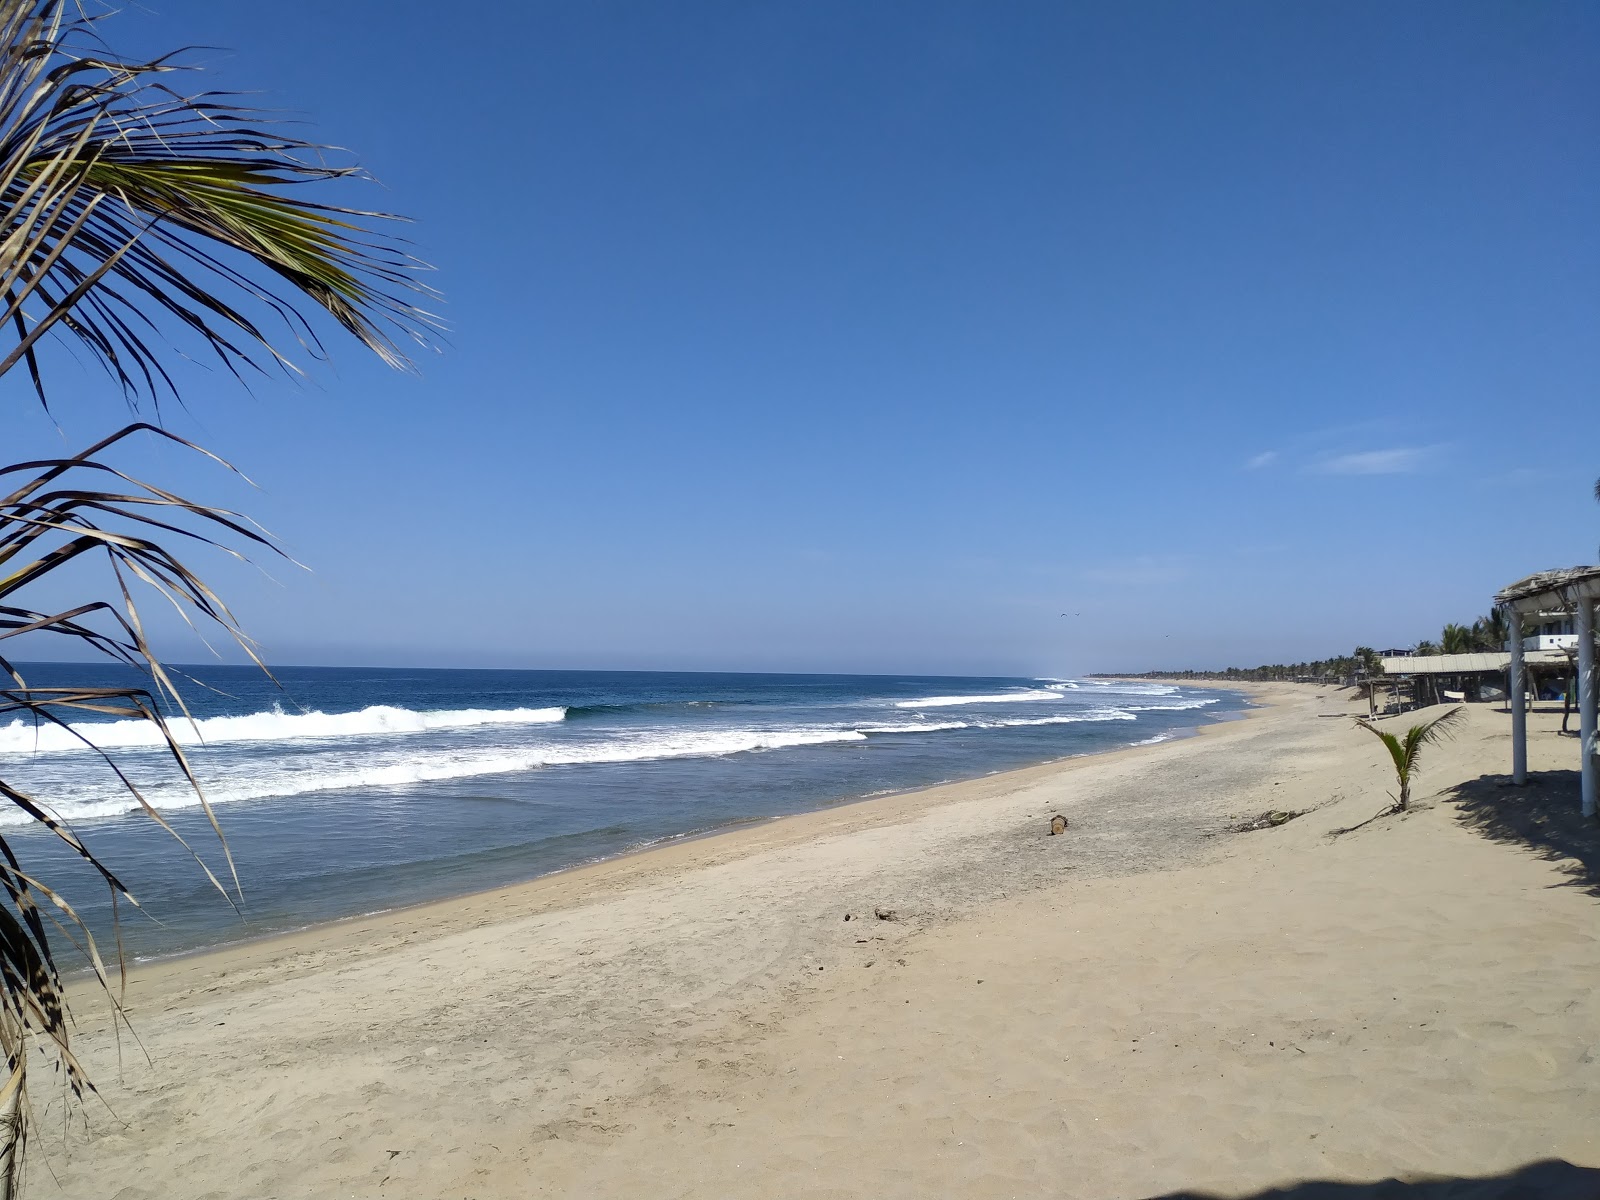 Playa Tomy'in fotoğrafı parlak kum yüzey ile